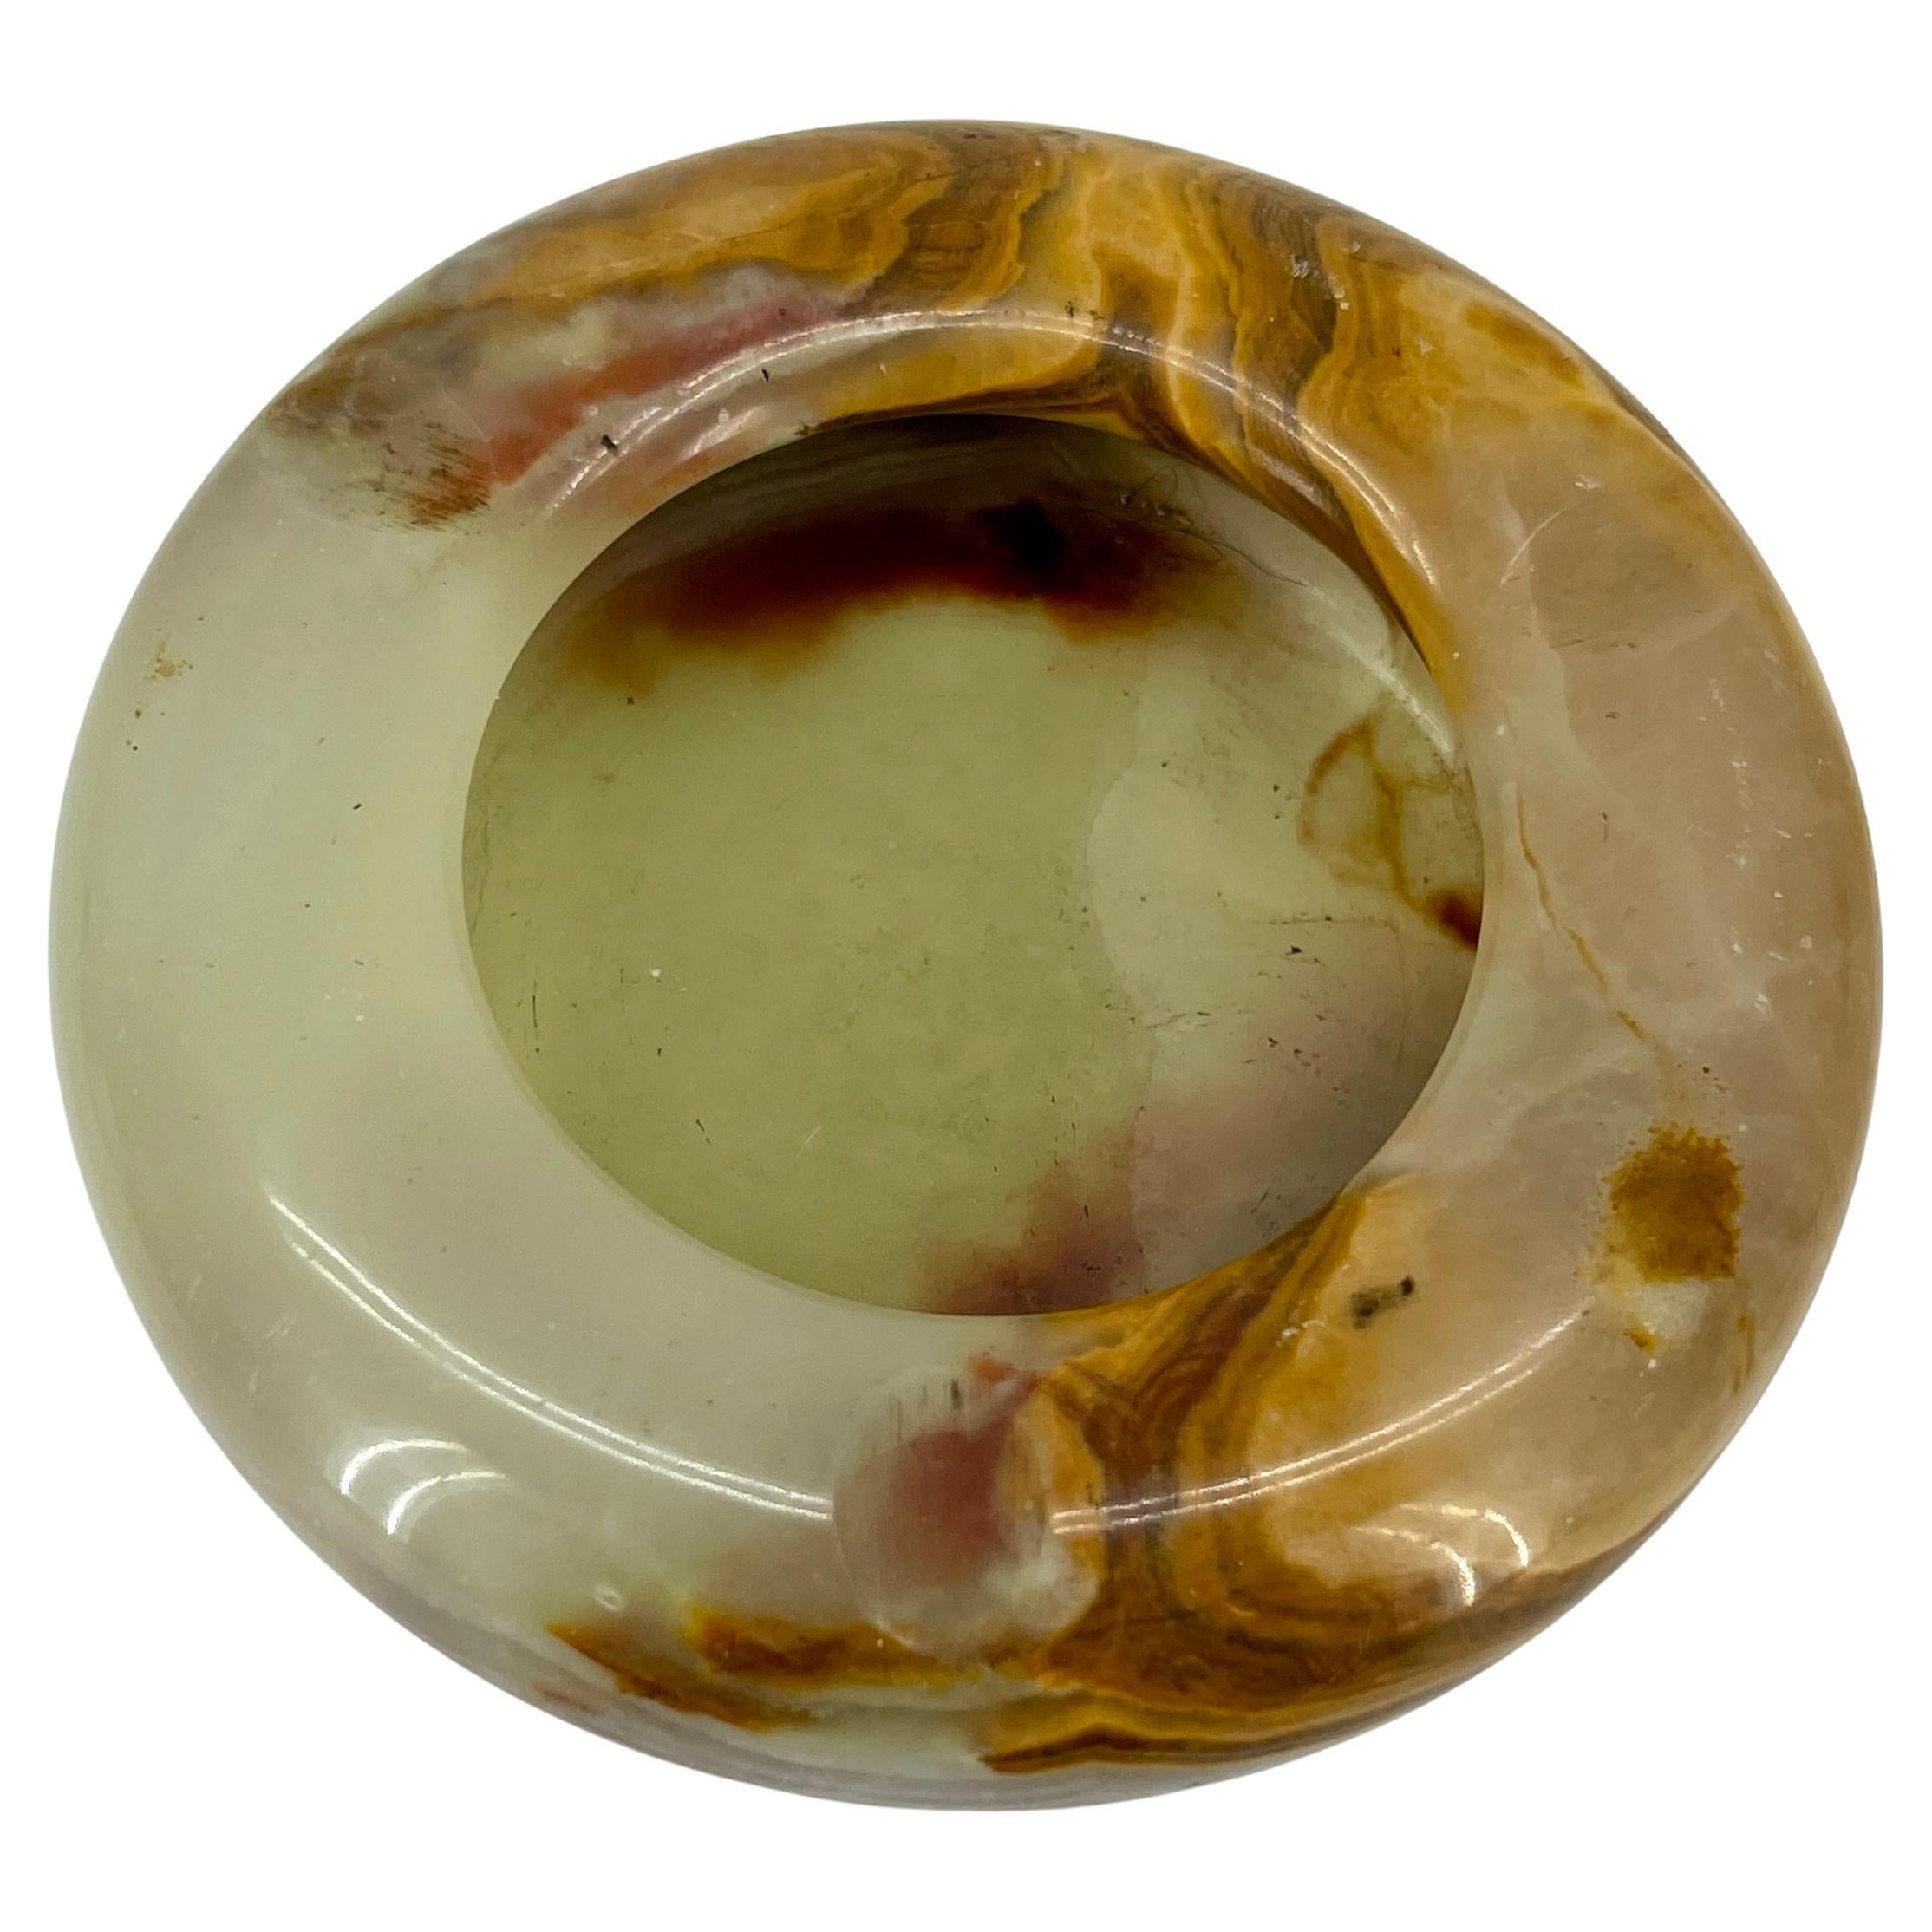 Bol ou cendrier rond en onyx de style moderne du milieu du siècle. Cette magnifique coupe ronde en onyx a été fabriquée en Espagne dans les années 1950. Pierre d'onyx sculptée et polie, montrant les stries caractéristiques du minéral. Magnifique